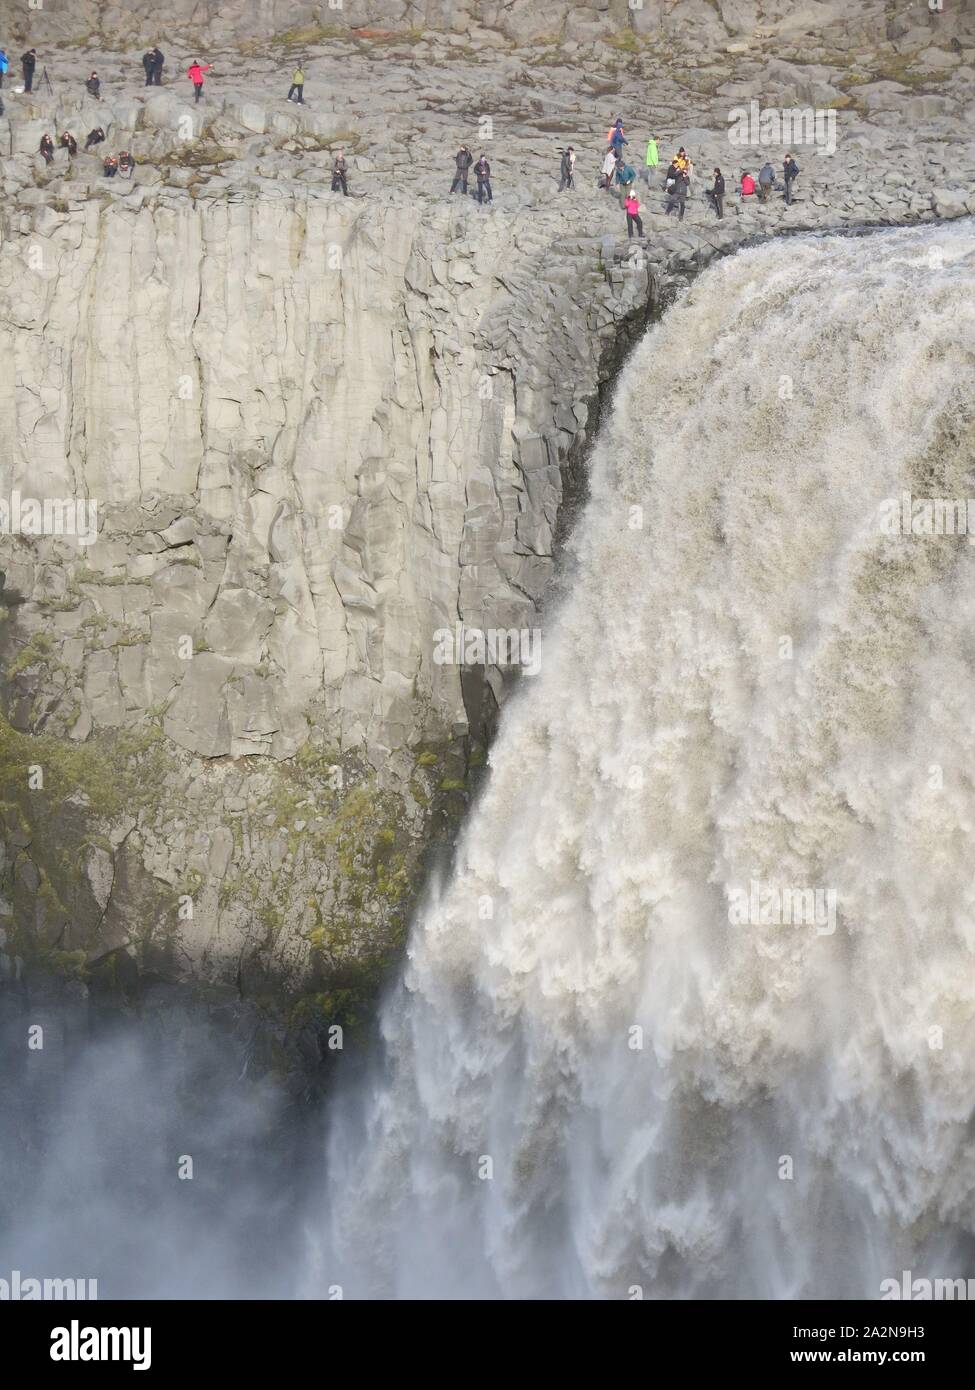 Fotografi gregge alle rocce basaltiche che al fianco di Islanda del più potente cascata di Dettifoss, con il suo torrente di acqua caduta 44m. Foto Stock